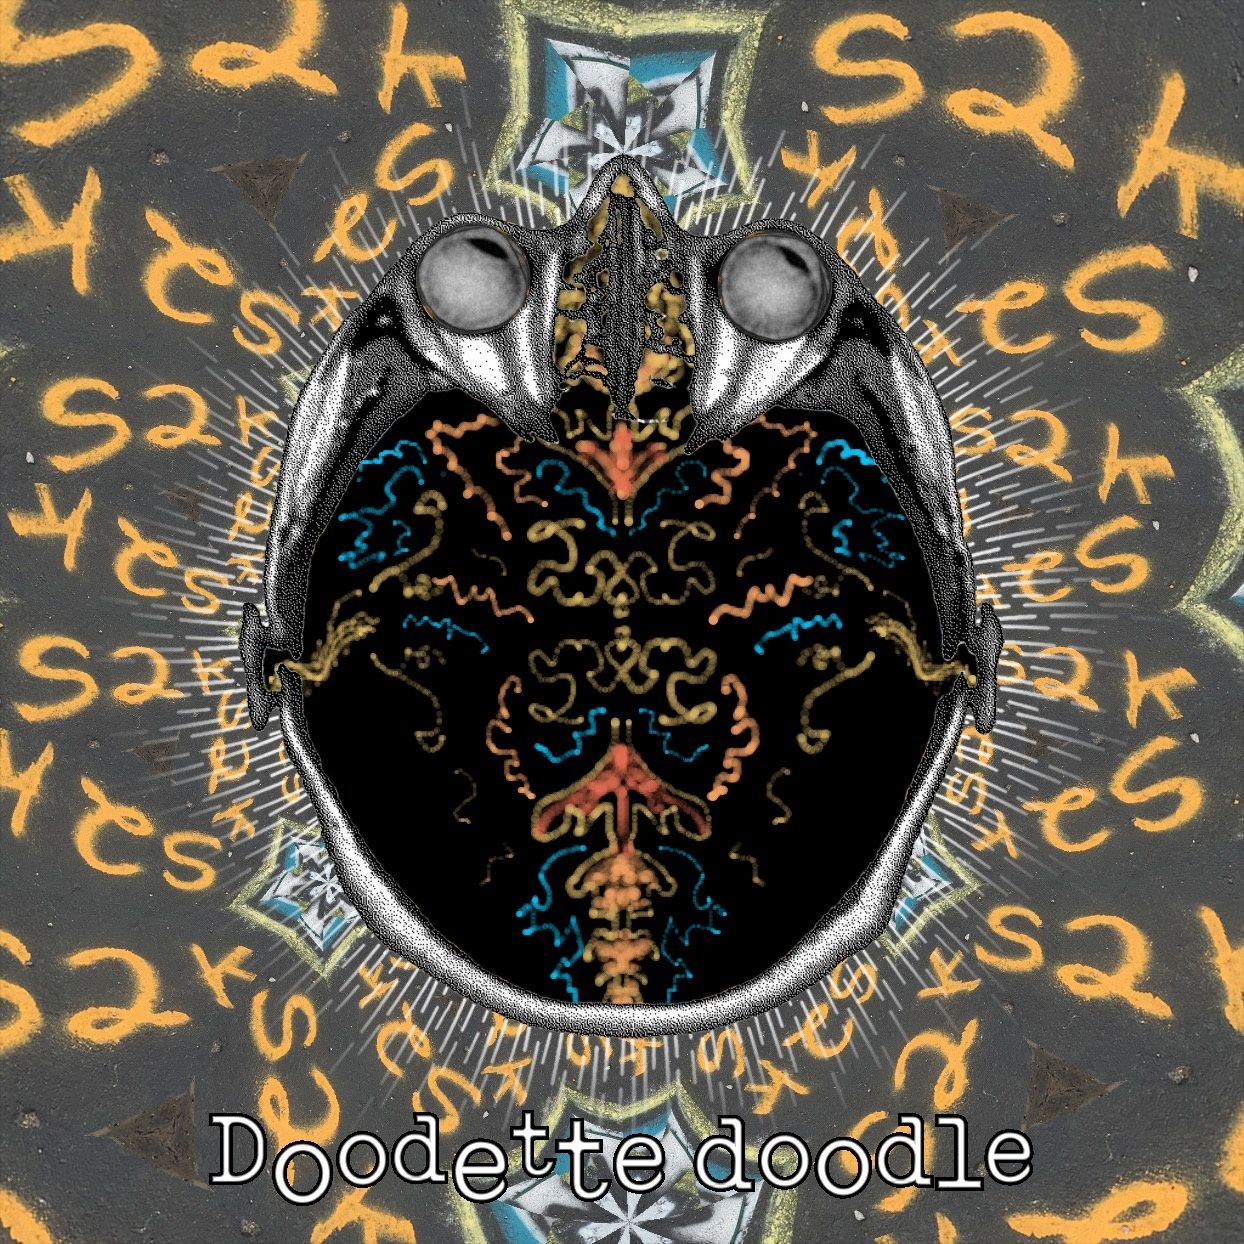 Doodette doodle